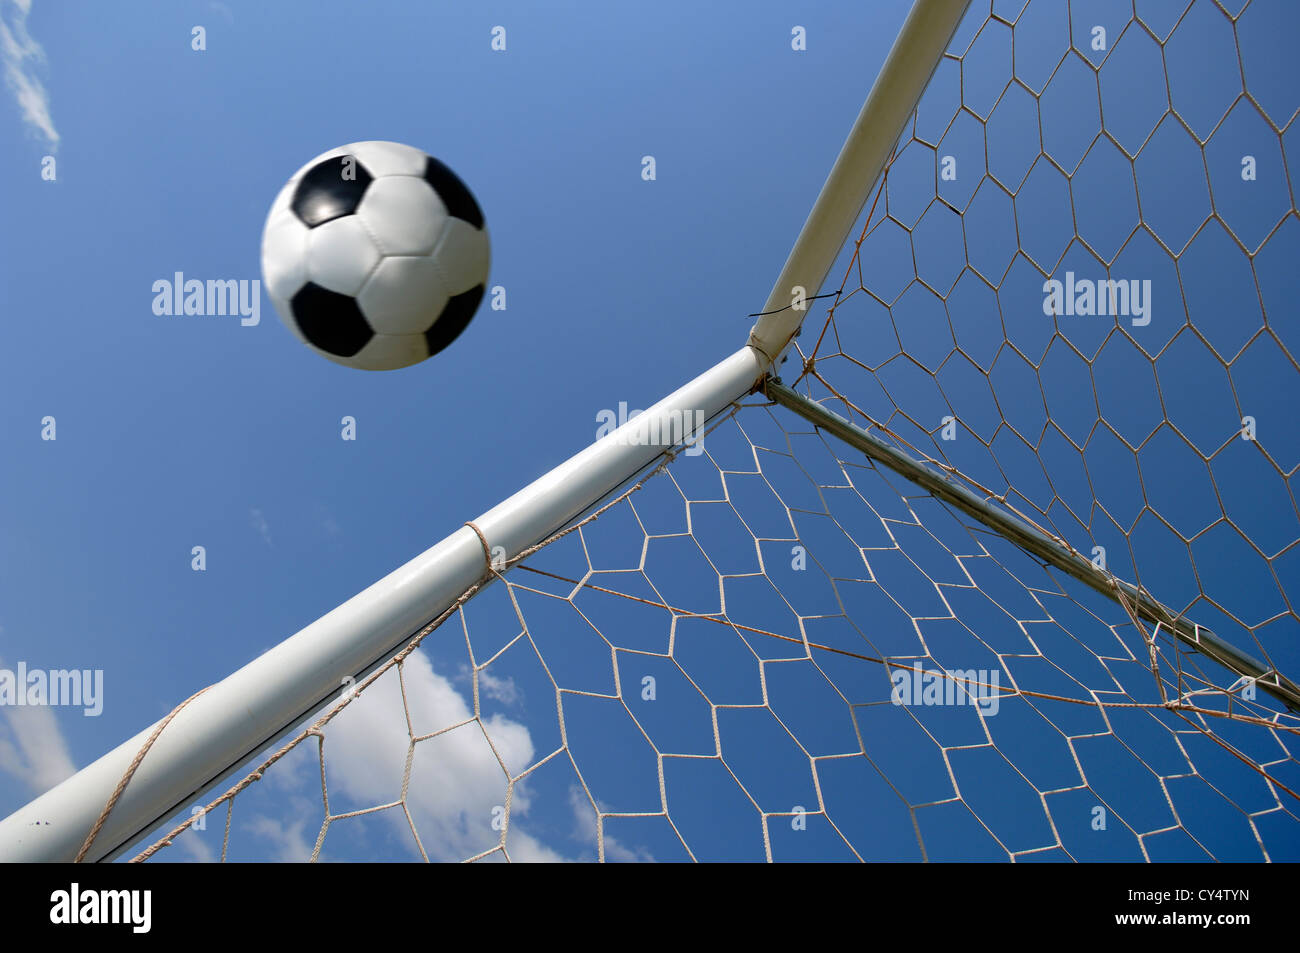 Football - soccer ball in goal against blue sky Stock Photo